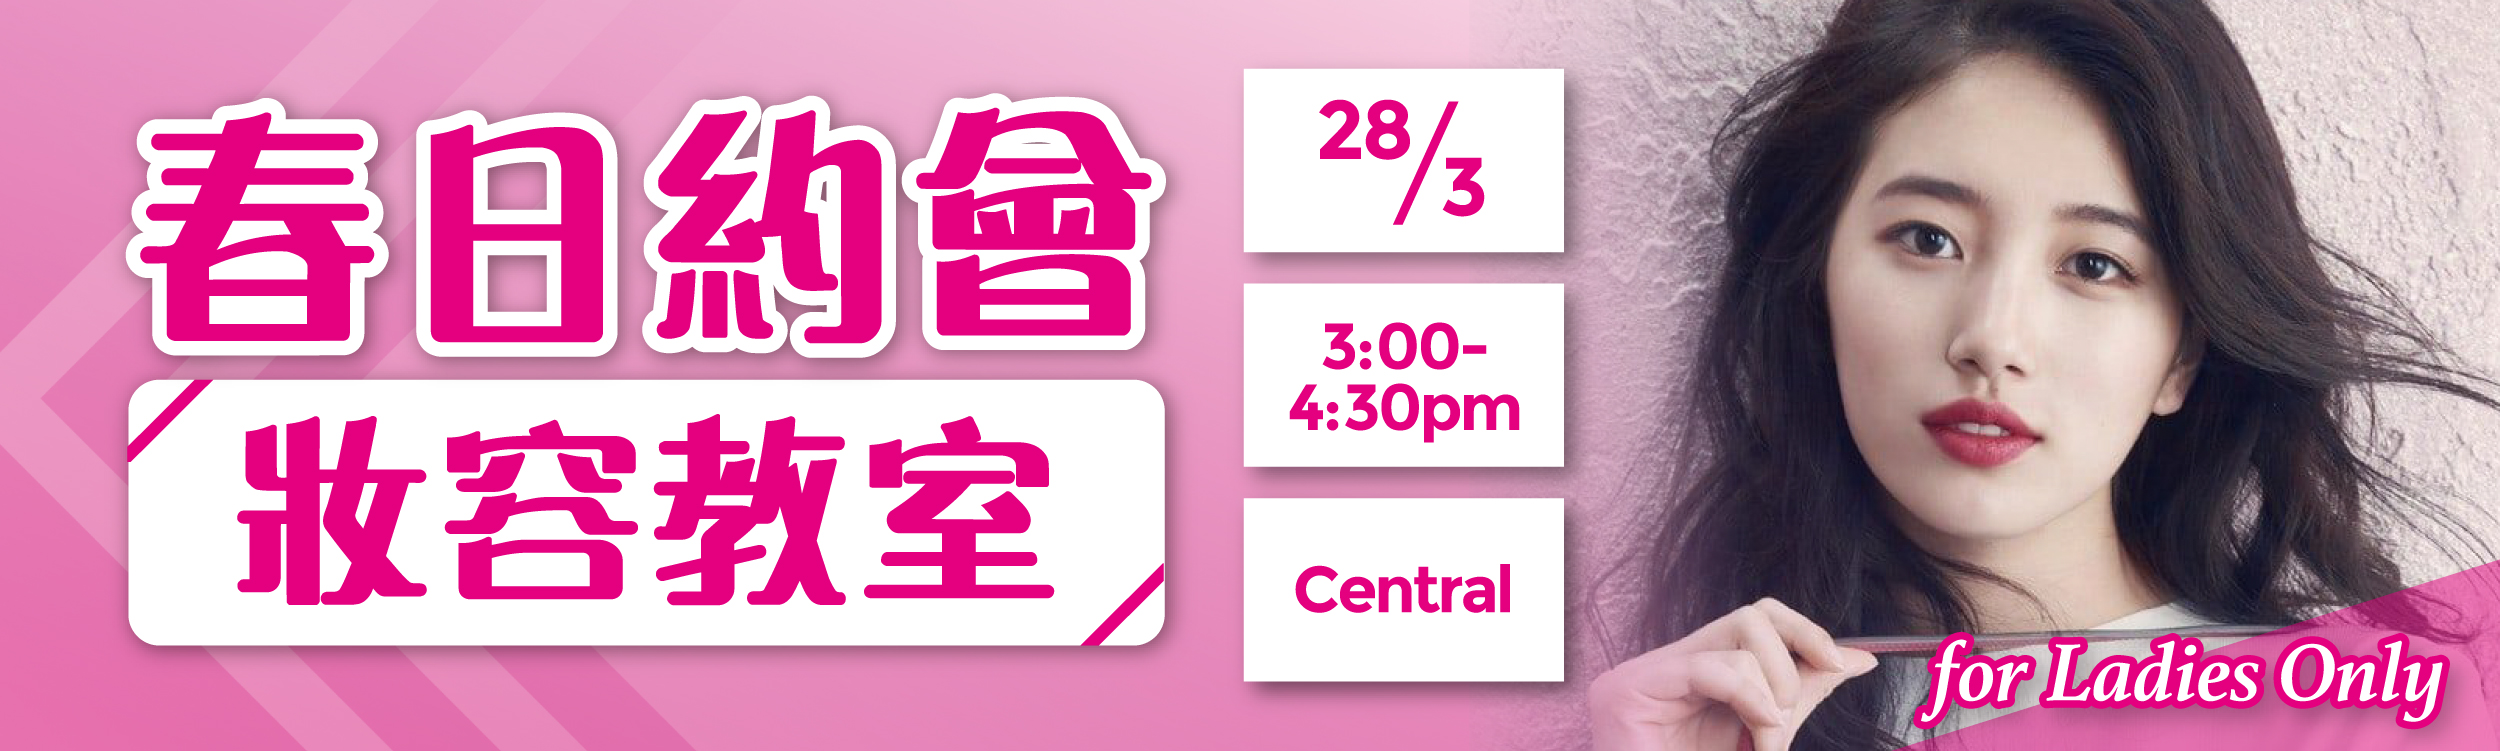 (完滿舉行)春日約會妝容教室 for Ladies Only - 2020年3月28日(星期六) 香港交友約會業協會 Hong Kong Speed Dating Federation - Speed Dating , 一對一約會, 單對單約會, 約會行業, 約會配對